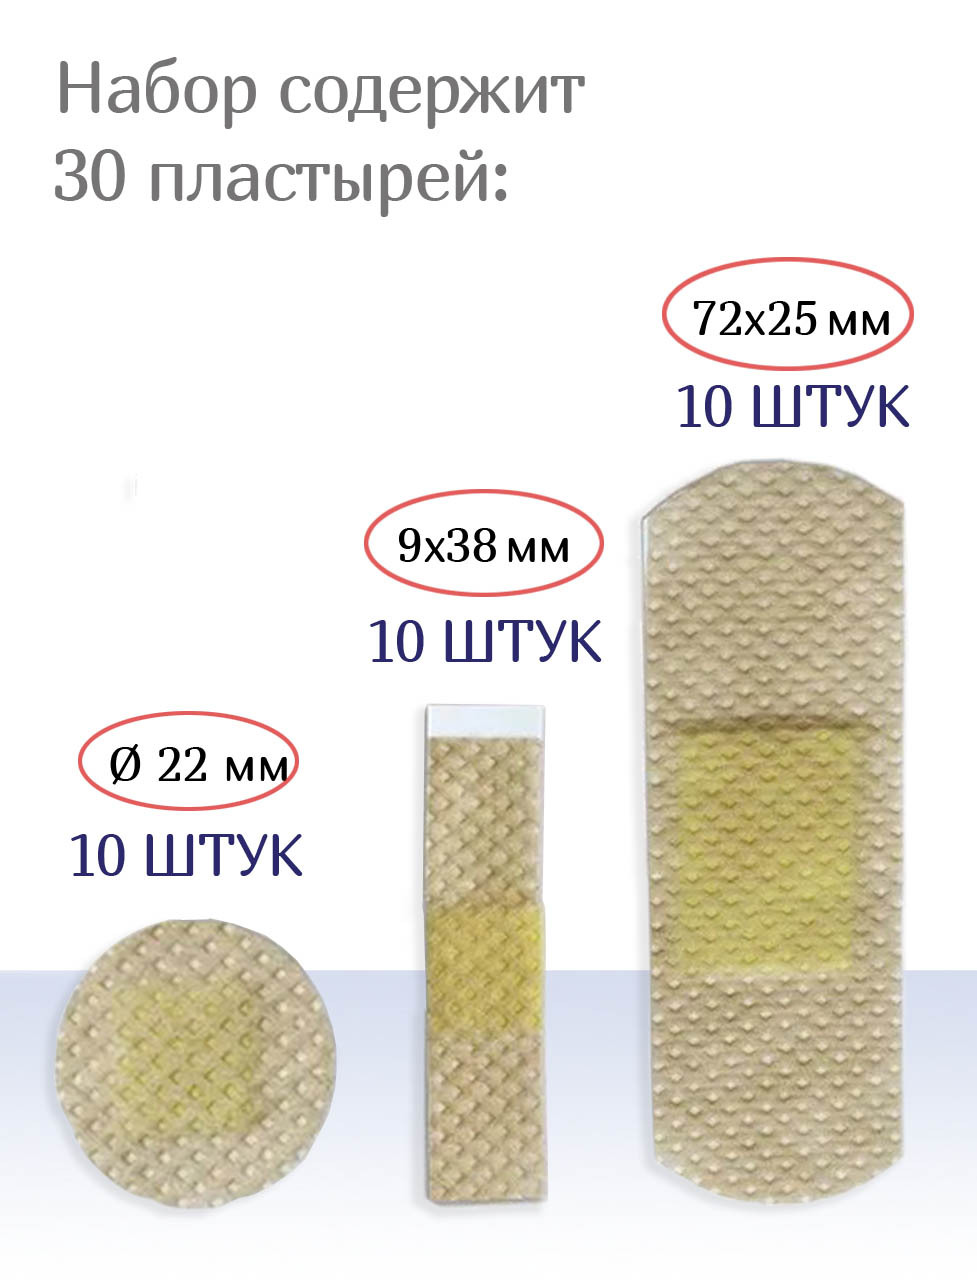 Пластыри бактерицидные нетканые телесные Мультиплекс Деликат 3 размера №15. Набор из 2-х упаковок